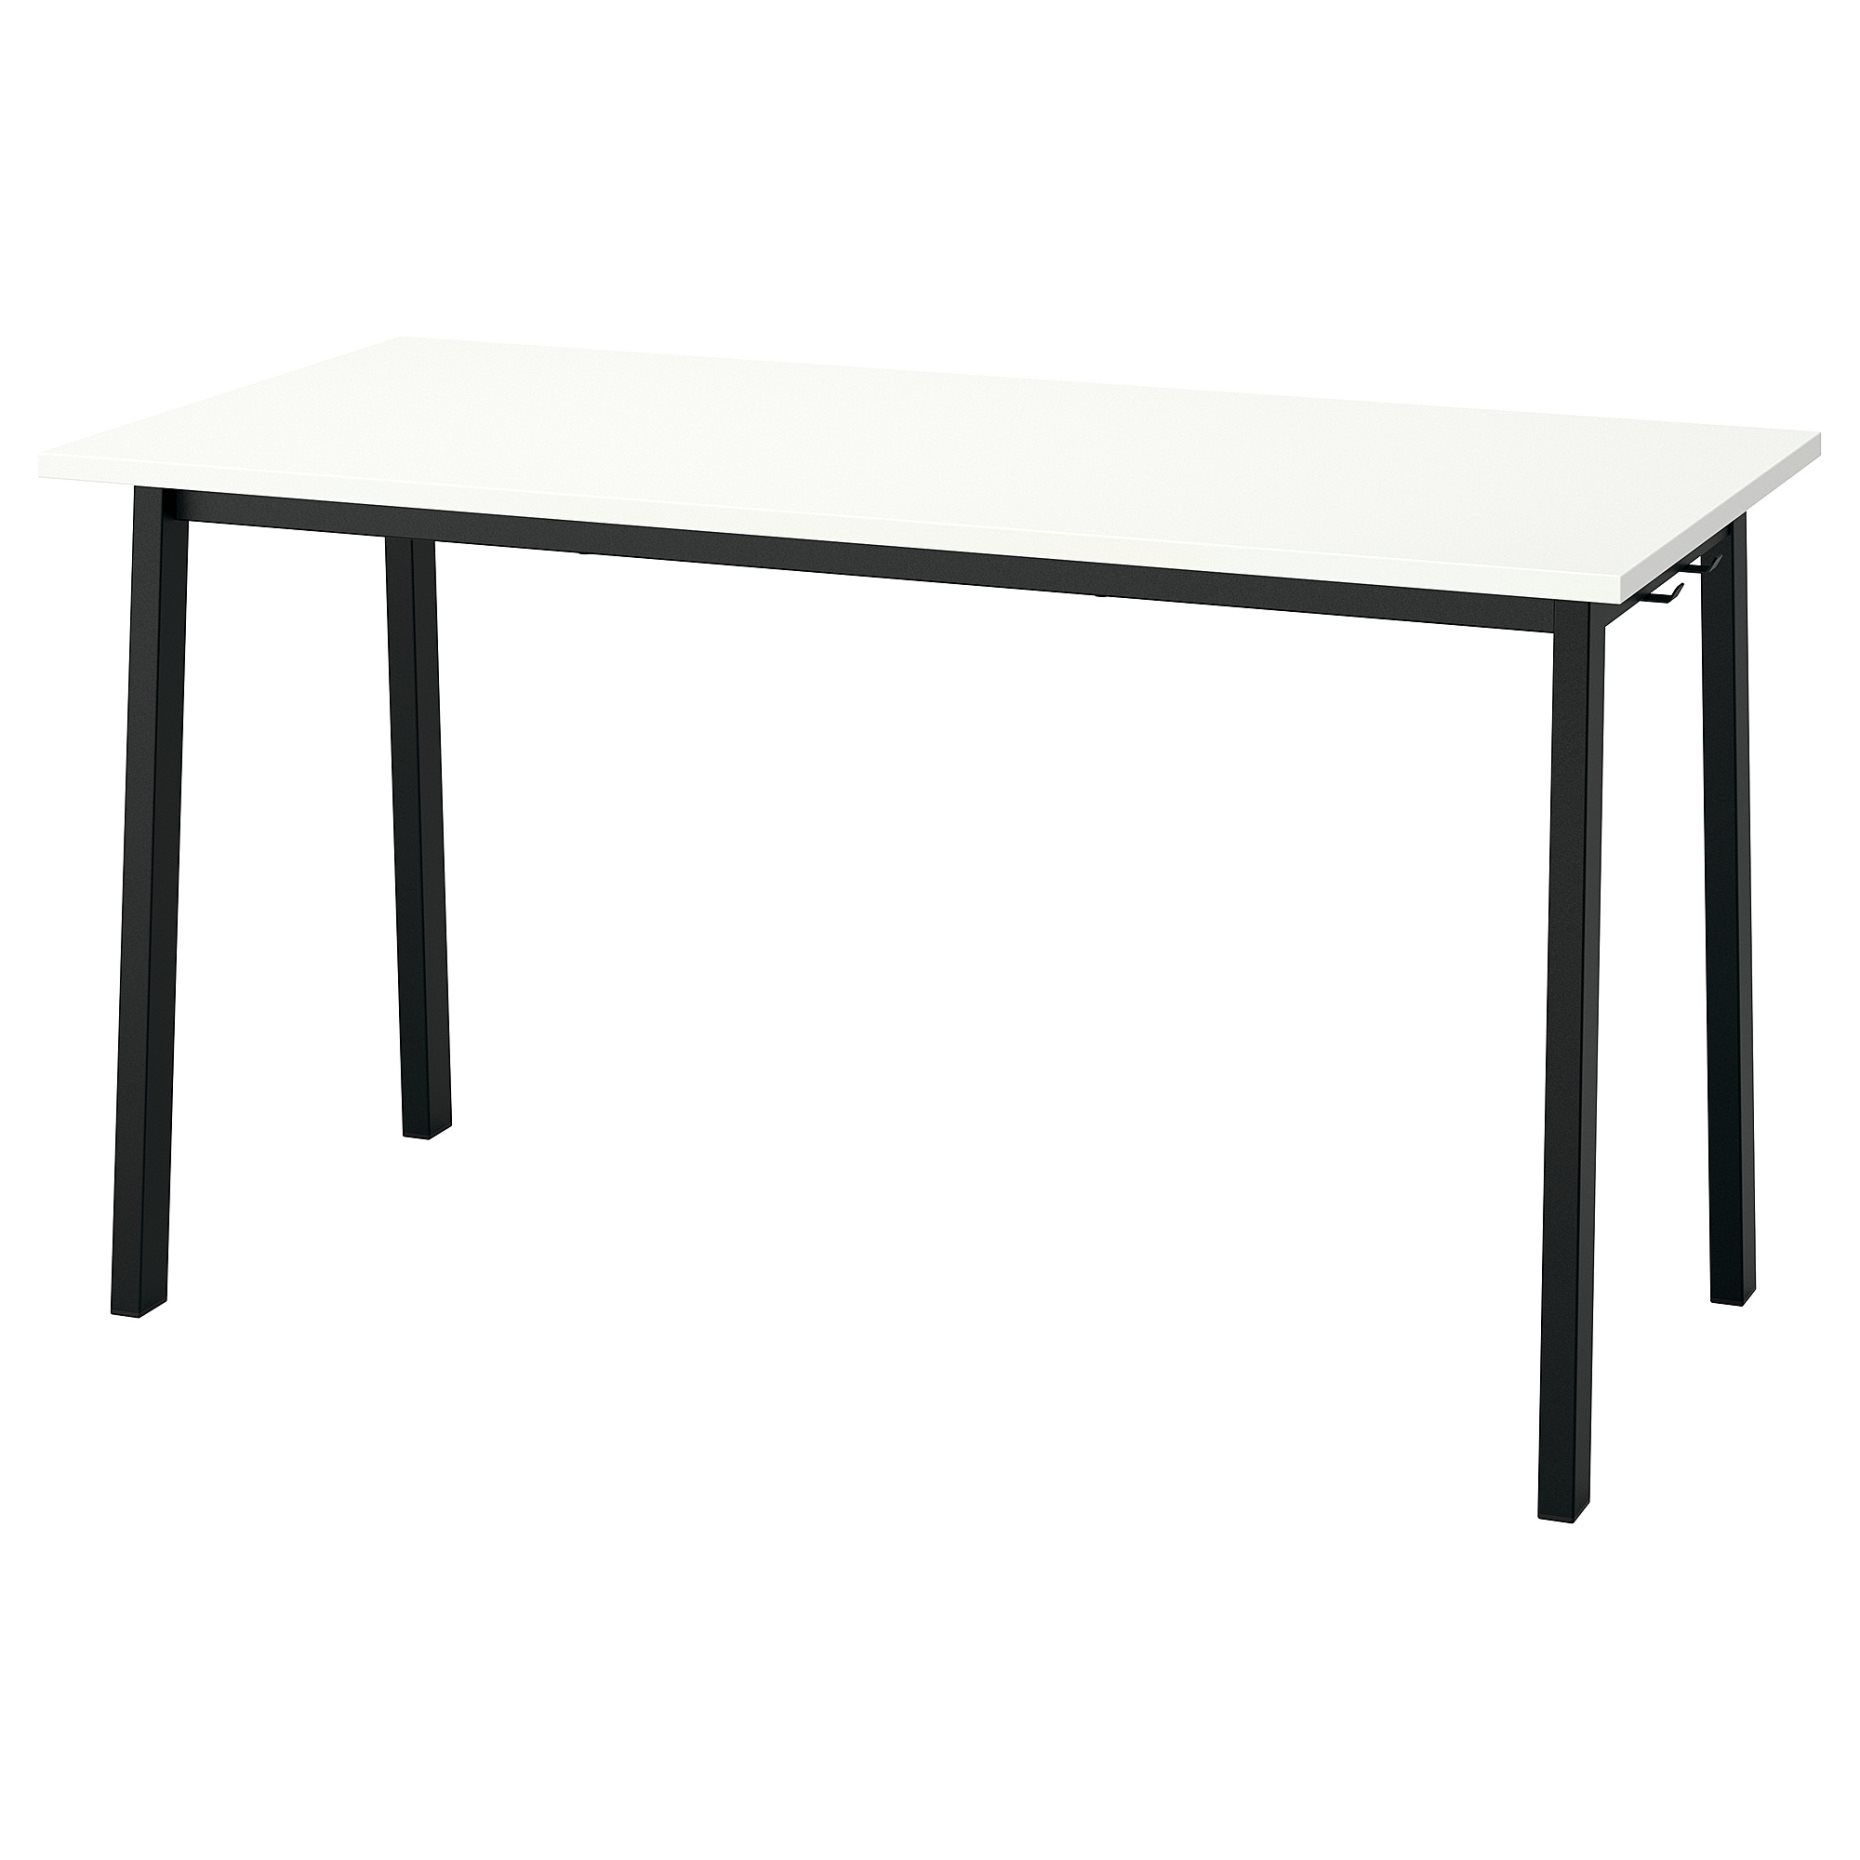 MITTZON, βάση για τραπέζι συνεδριάσεων, 140x68x73 cm, 305.445.71